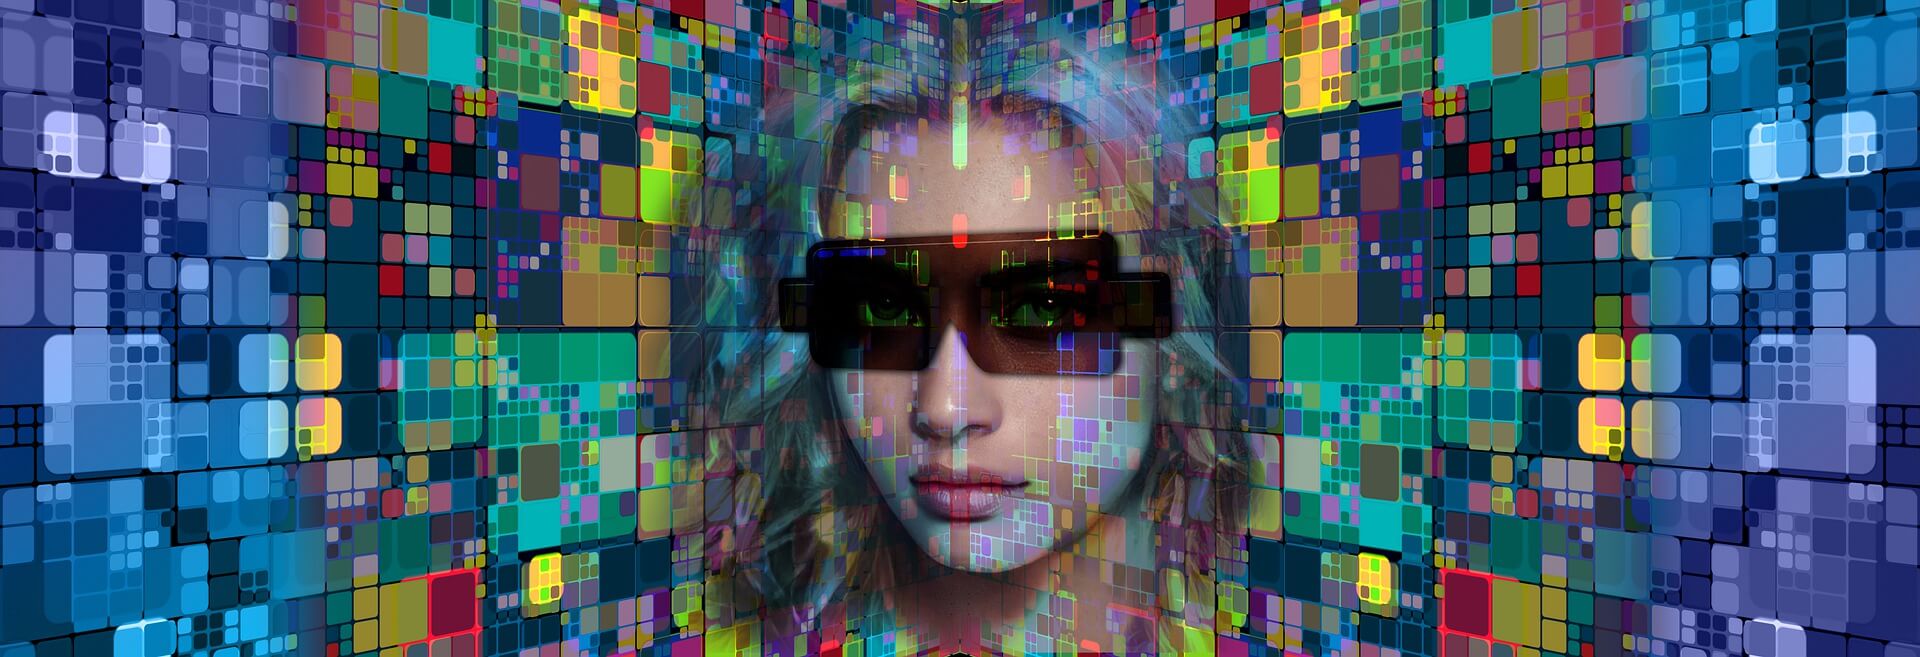 图片展示了一位戴着墨镜的女性面部，背景是由多彩像素方块组成的数字化图案。